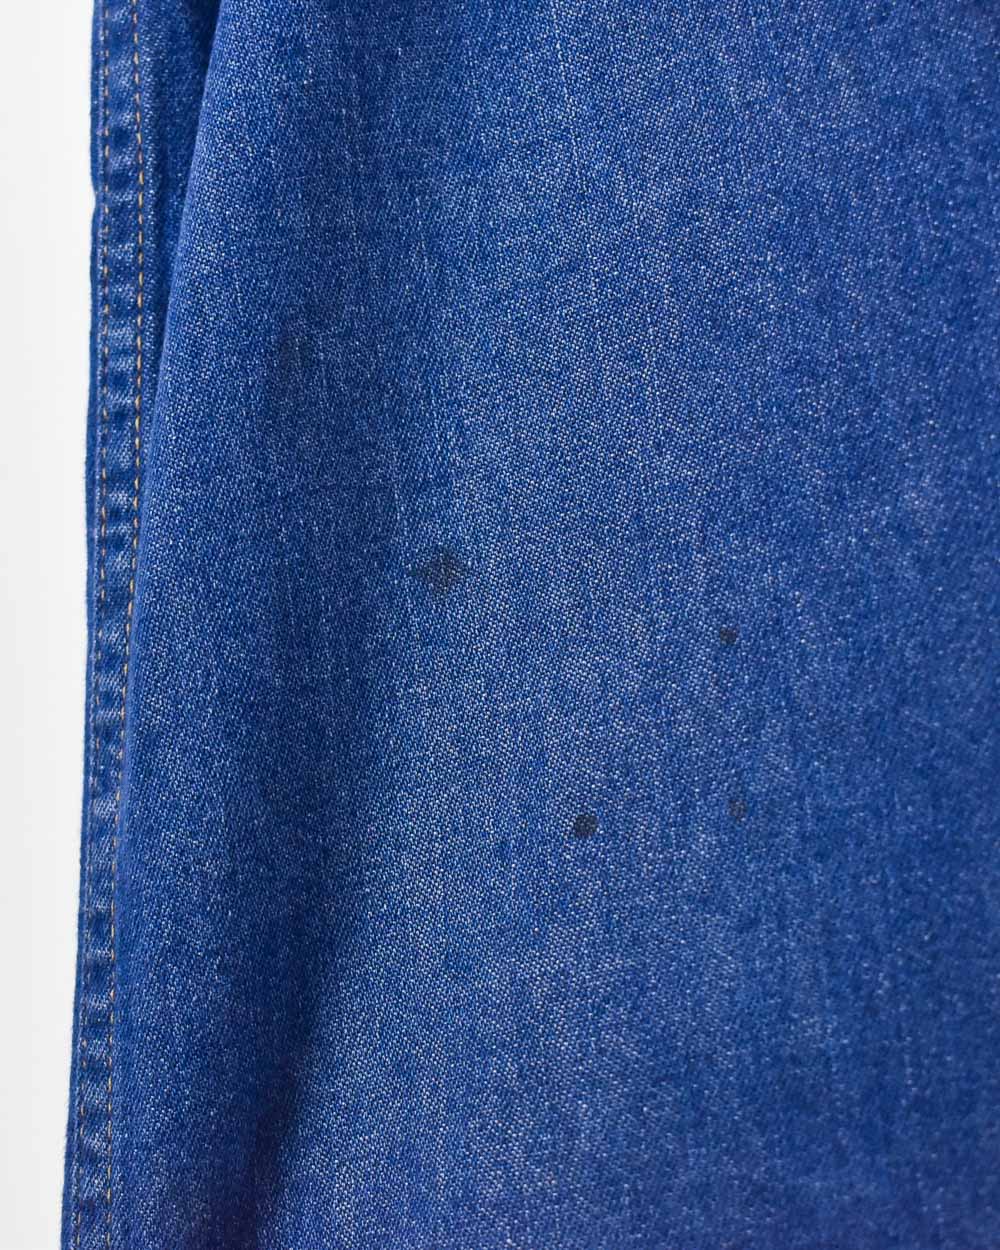 Blue Wrangler Fleece Lined Jeans - W44 L27